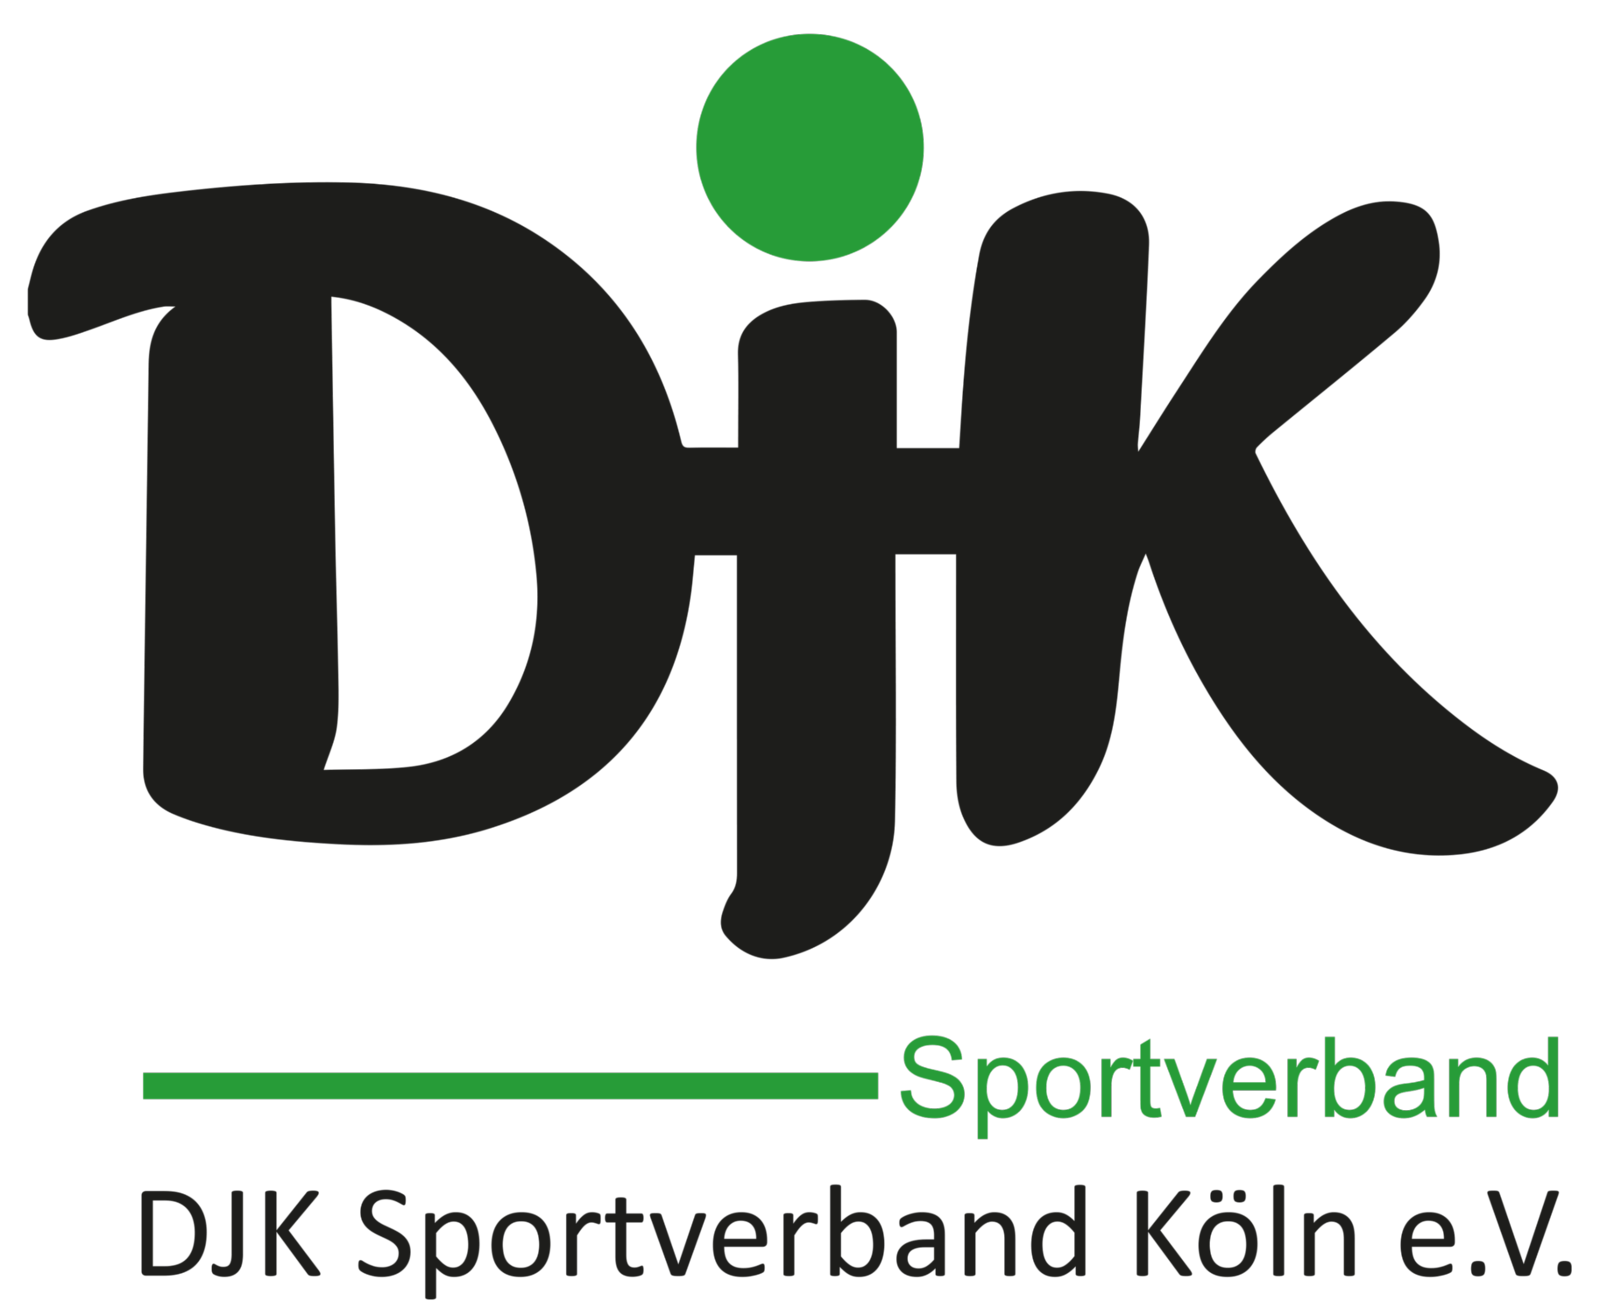 DJK Sportverbadn Köln